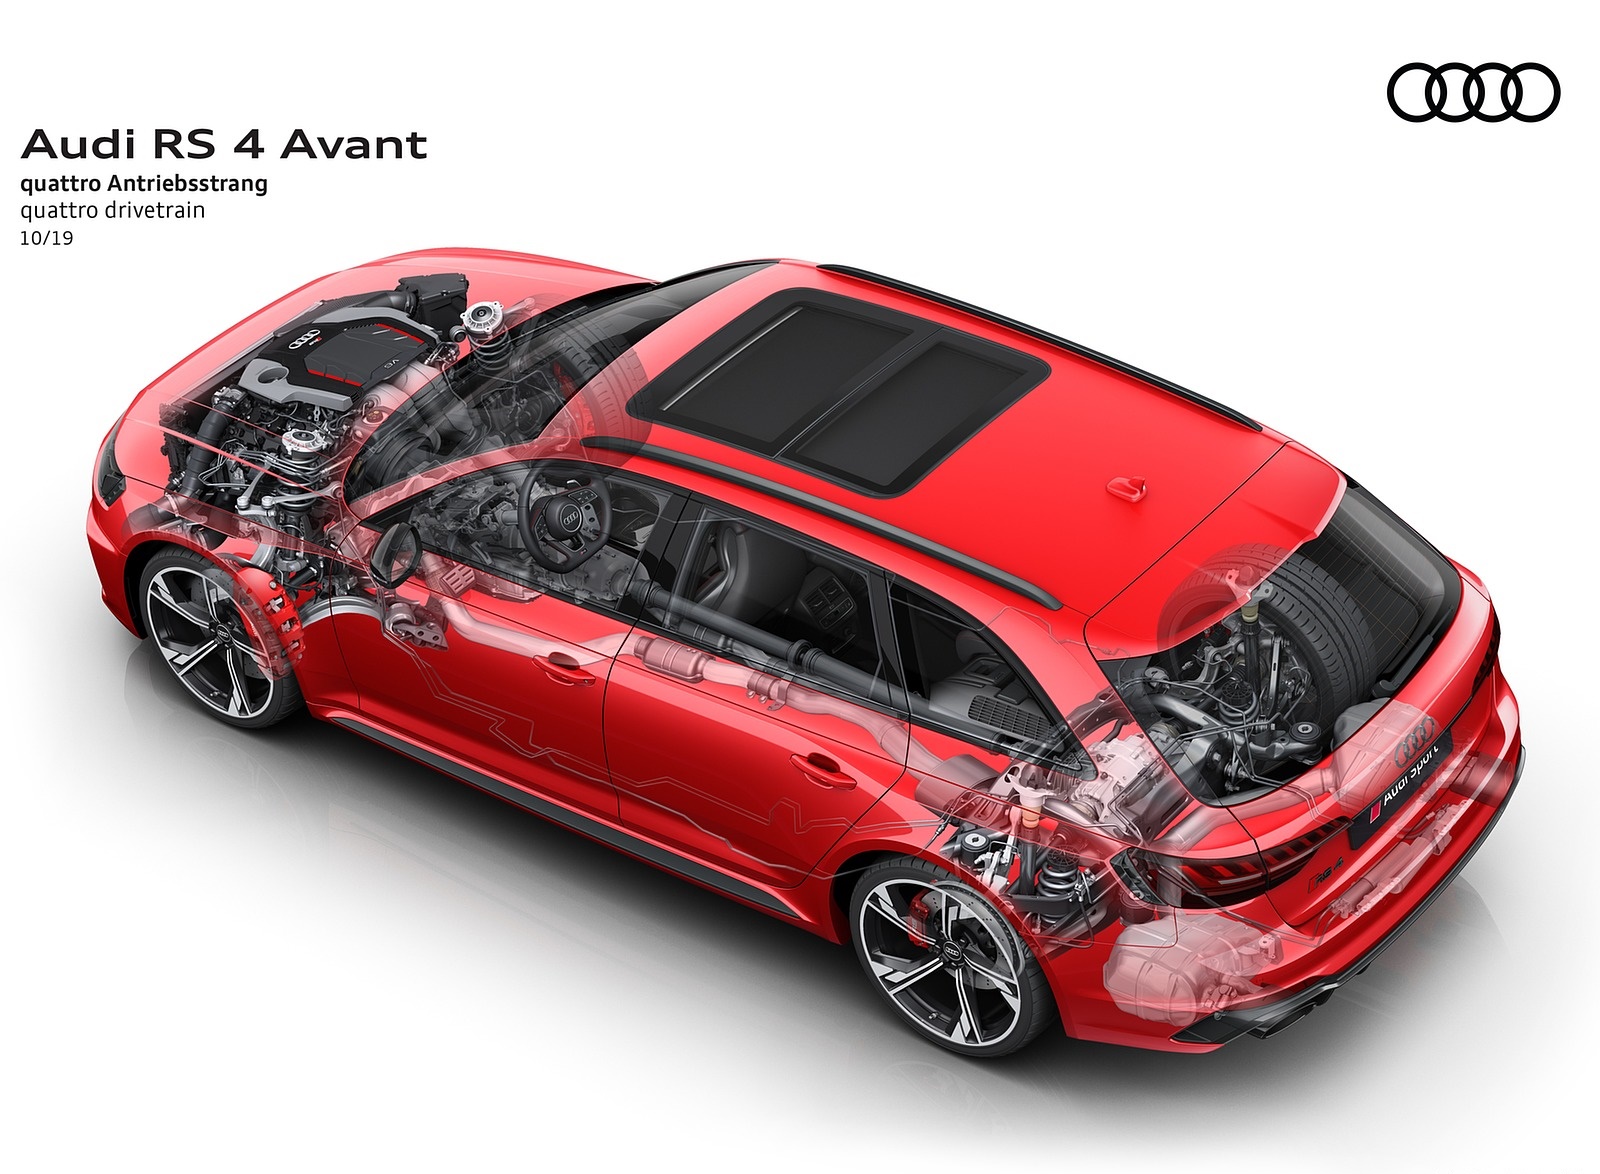 2020 Audi RS 4 Avant quattro drivetrain Wallpapers #89 of 98